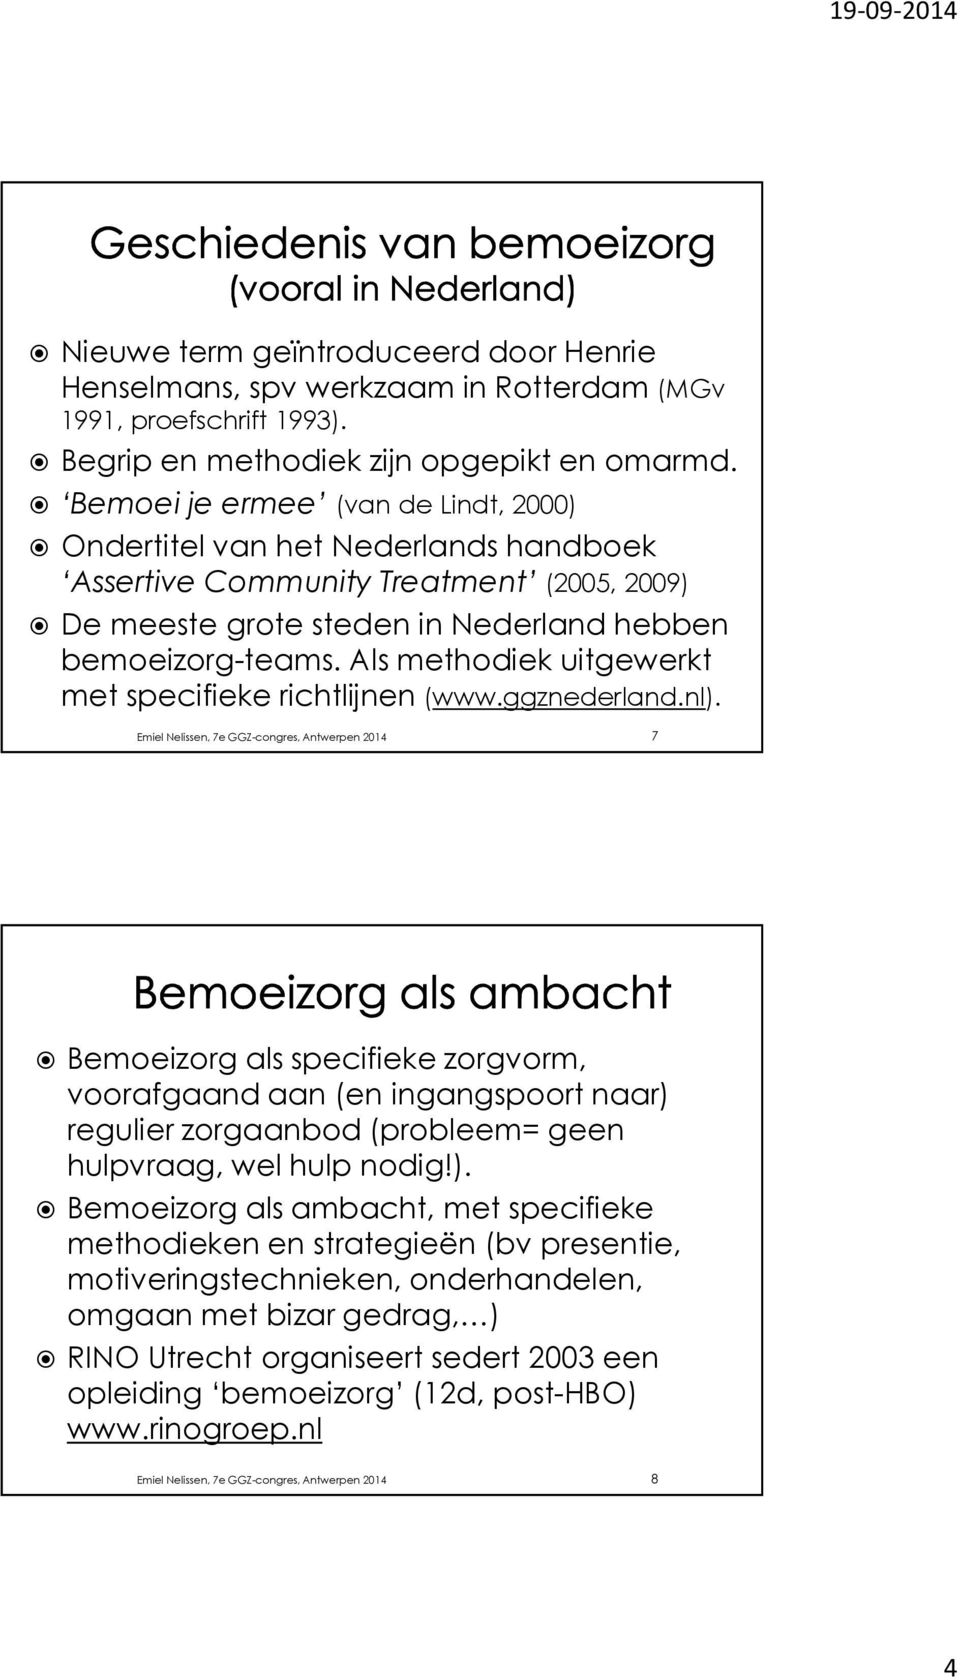 Als methodiek uitgewerkt met specifieke richtlijnen (www.ggznederland.nl).